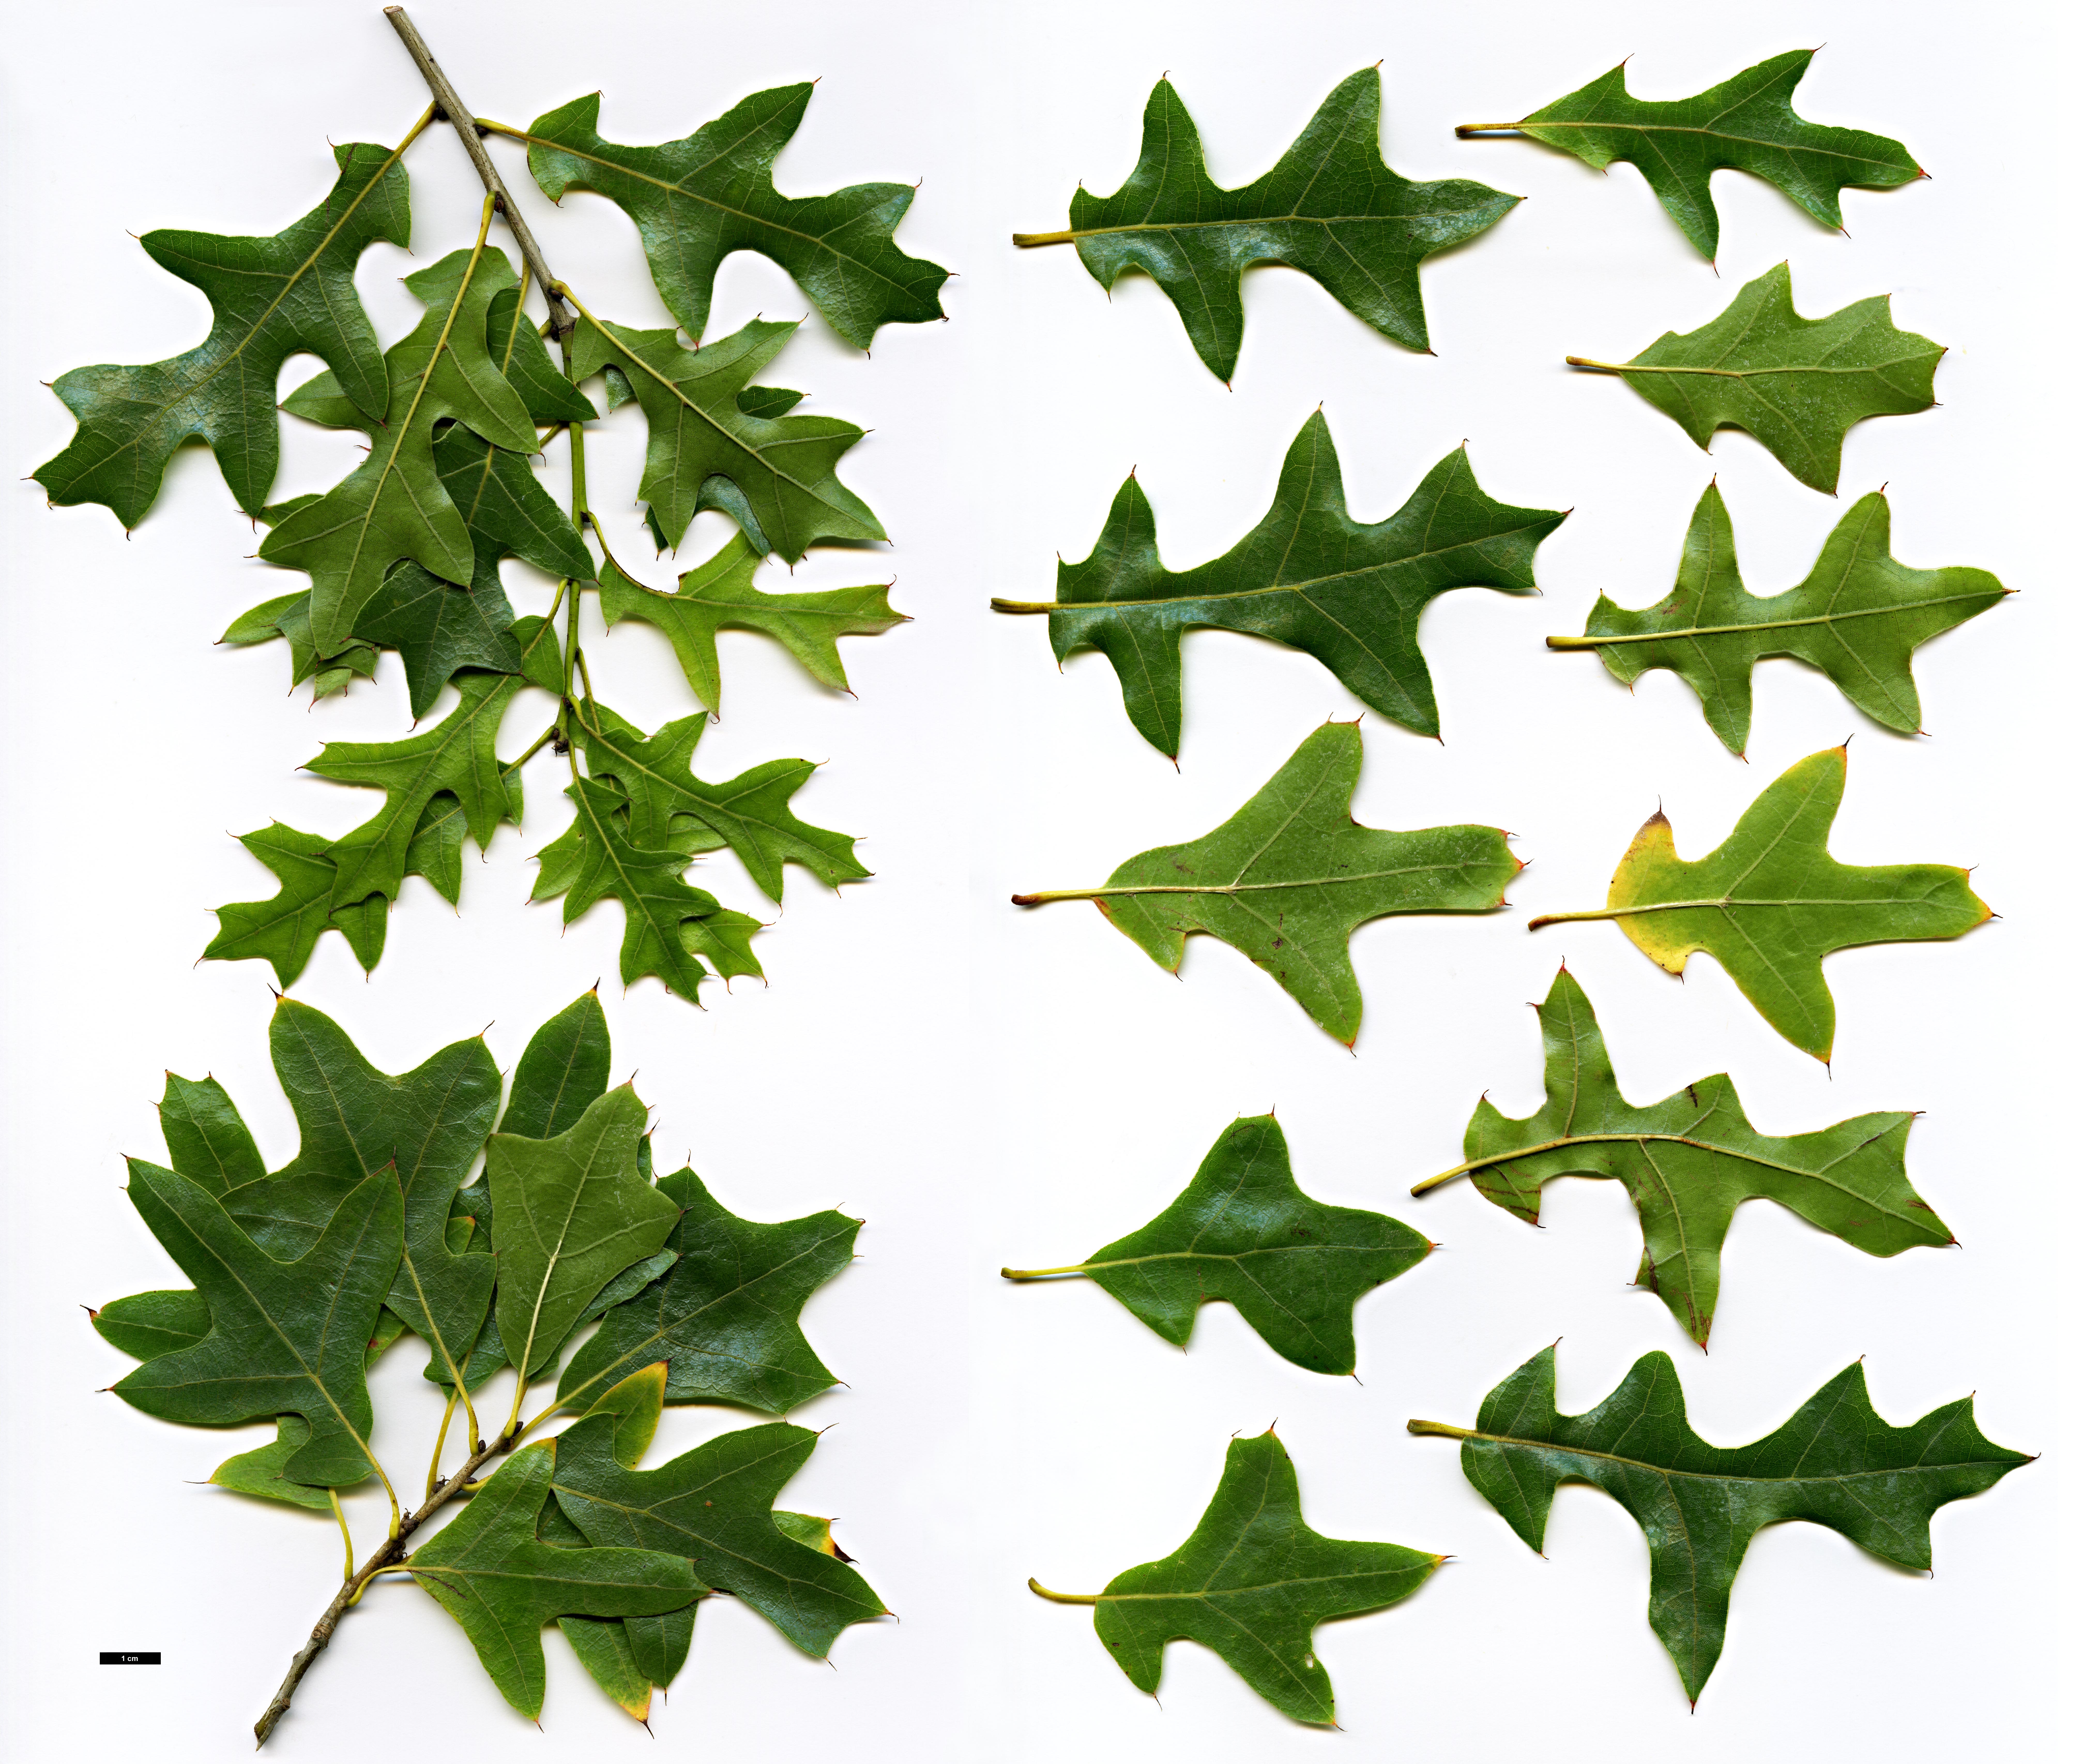 High resolution image: Family: Fagaceae - Genus: Quercus - Taxon: ×hastingsii (Q.buckleyi × Q.marilandica)